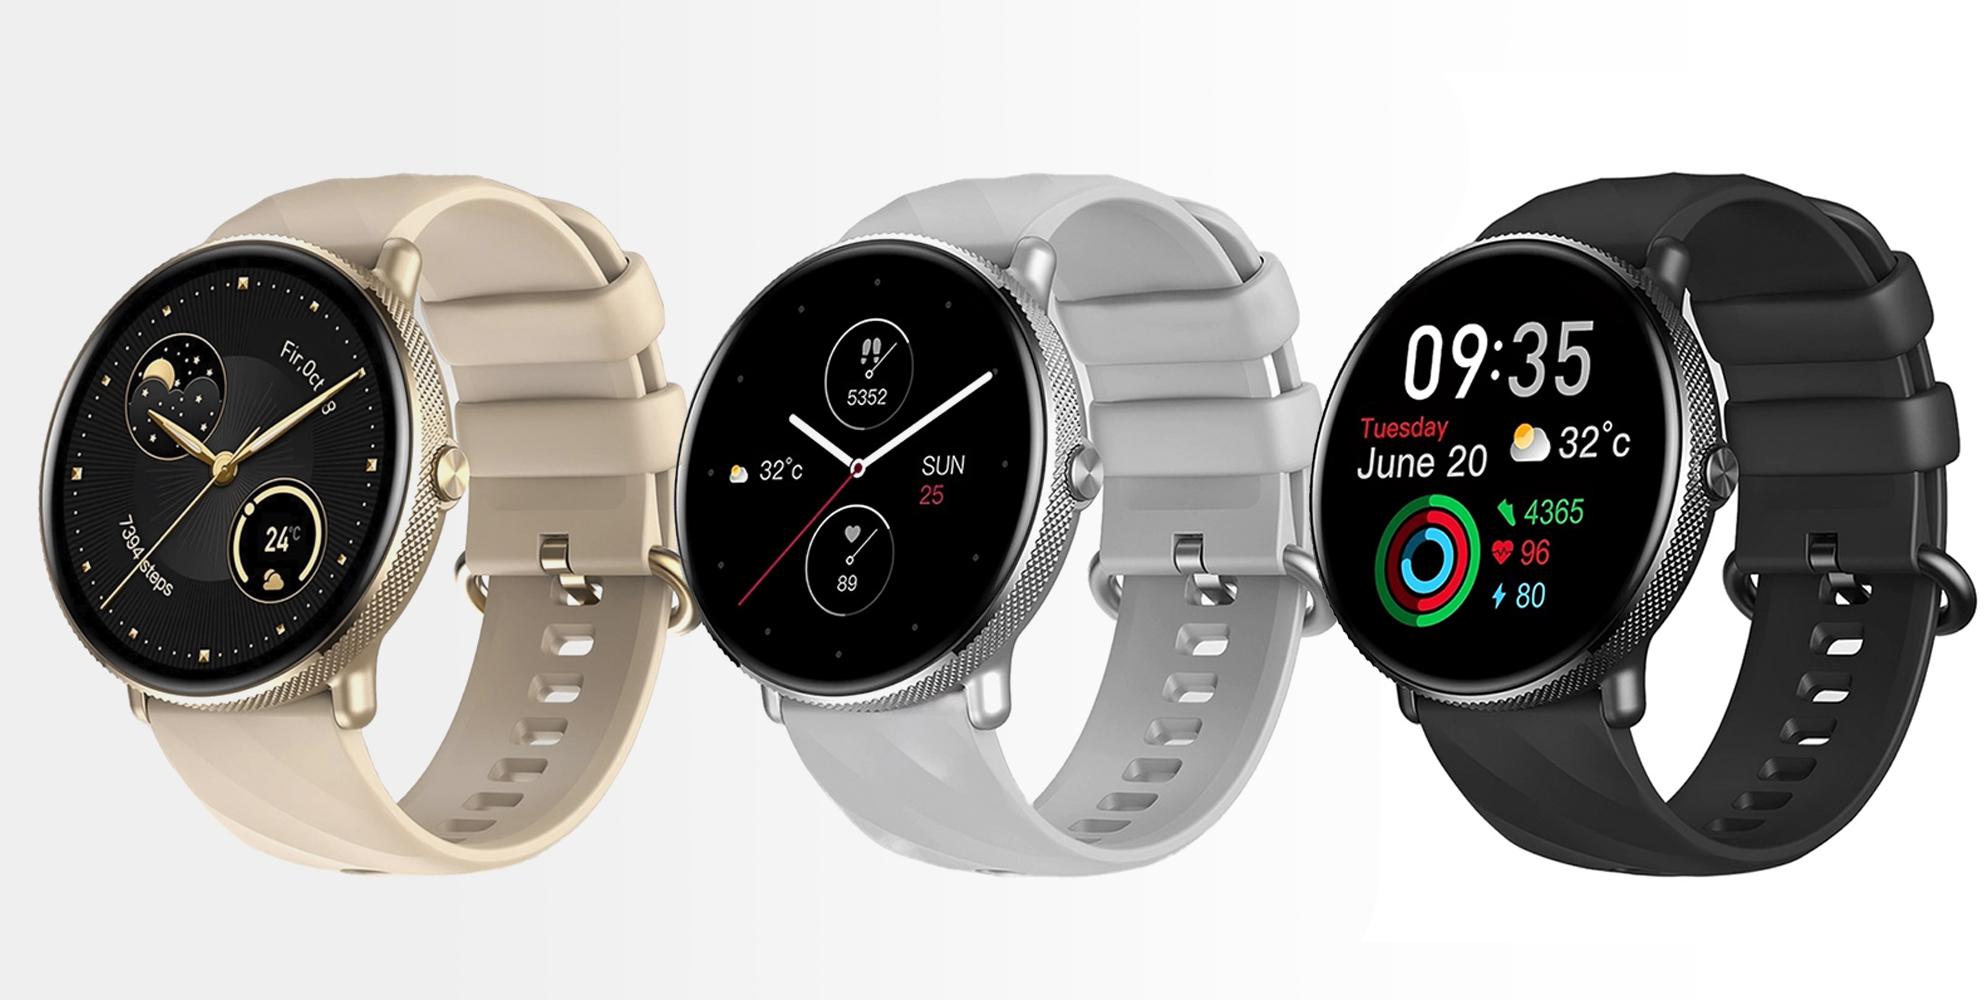 Smartwatch Zeblaze GTR 3 Pro złoty